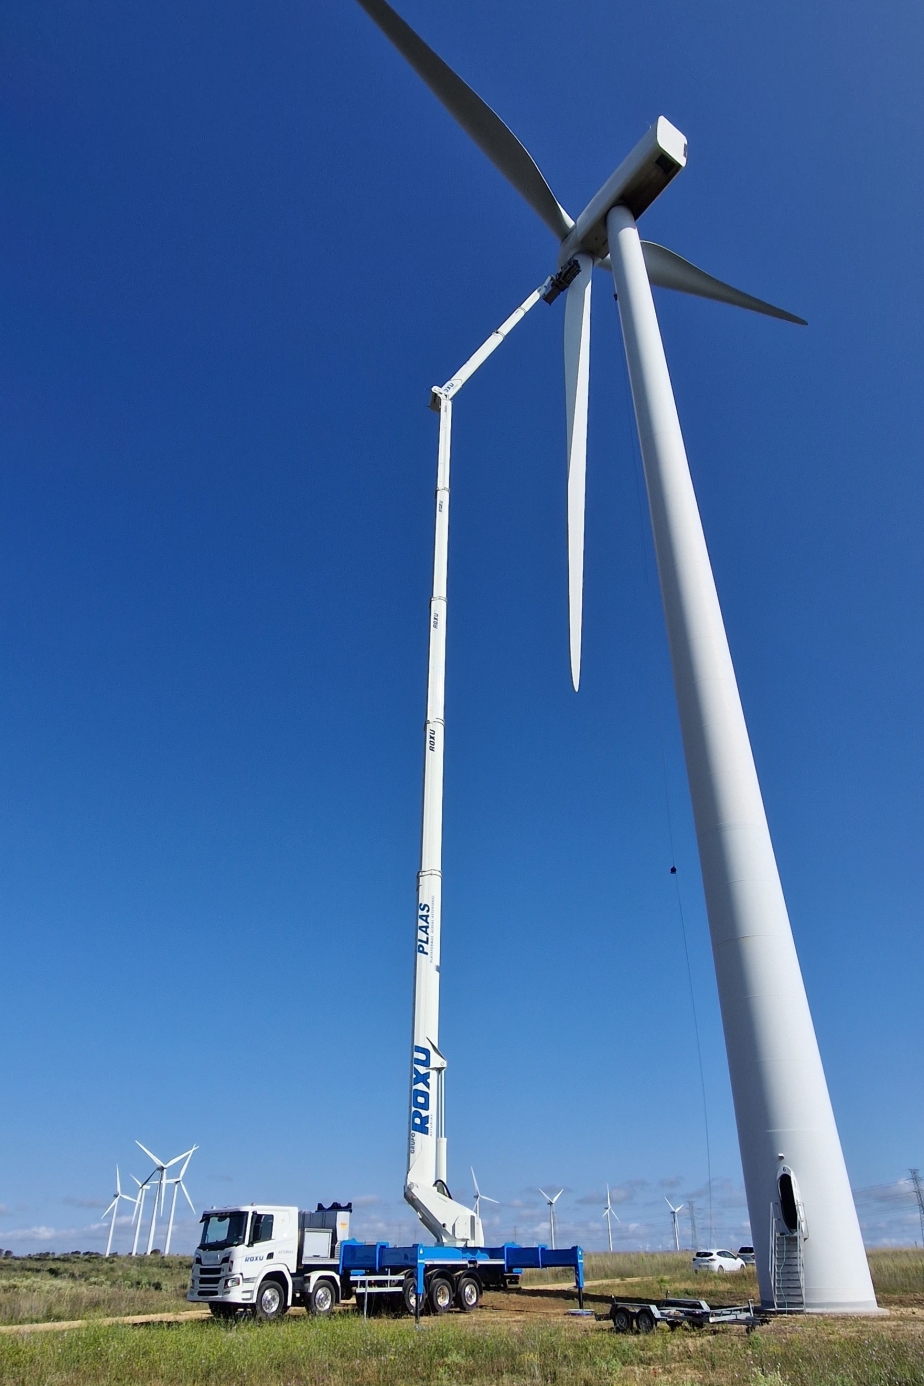 RUTHMANN STEIGER T 900 HF von ROXU in einem Windpark im Einsatz